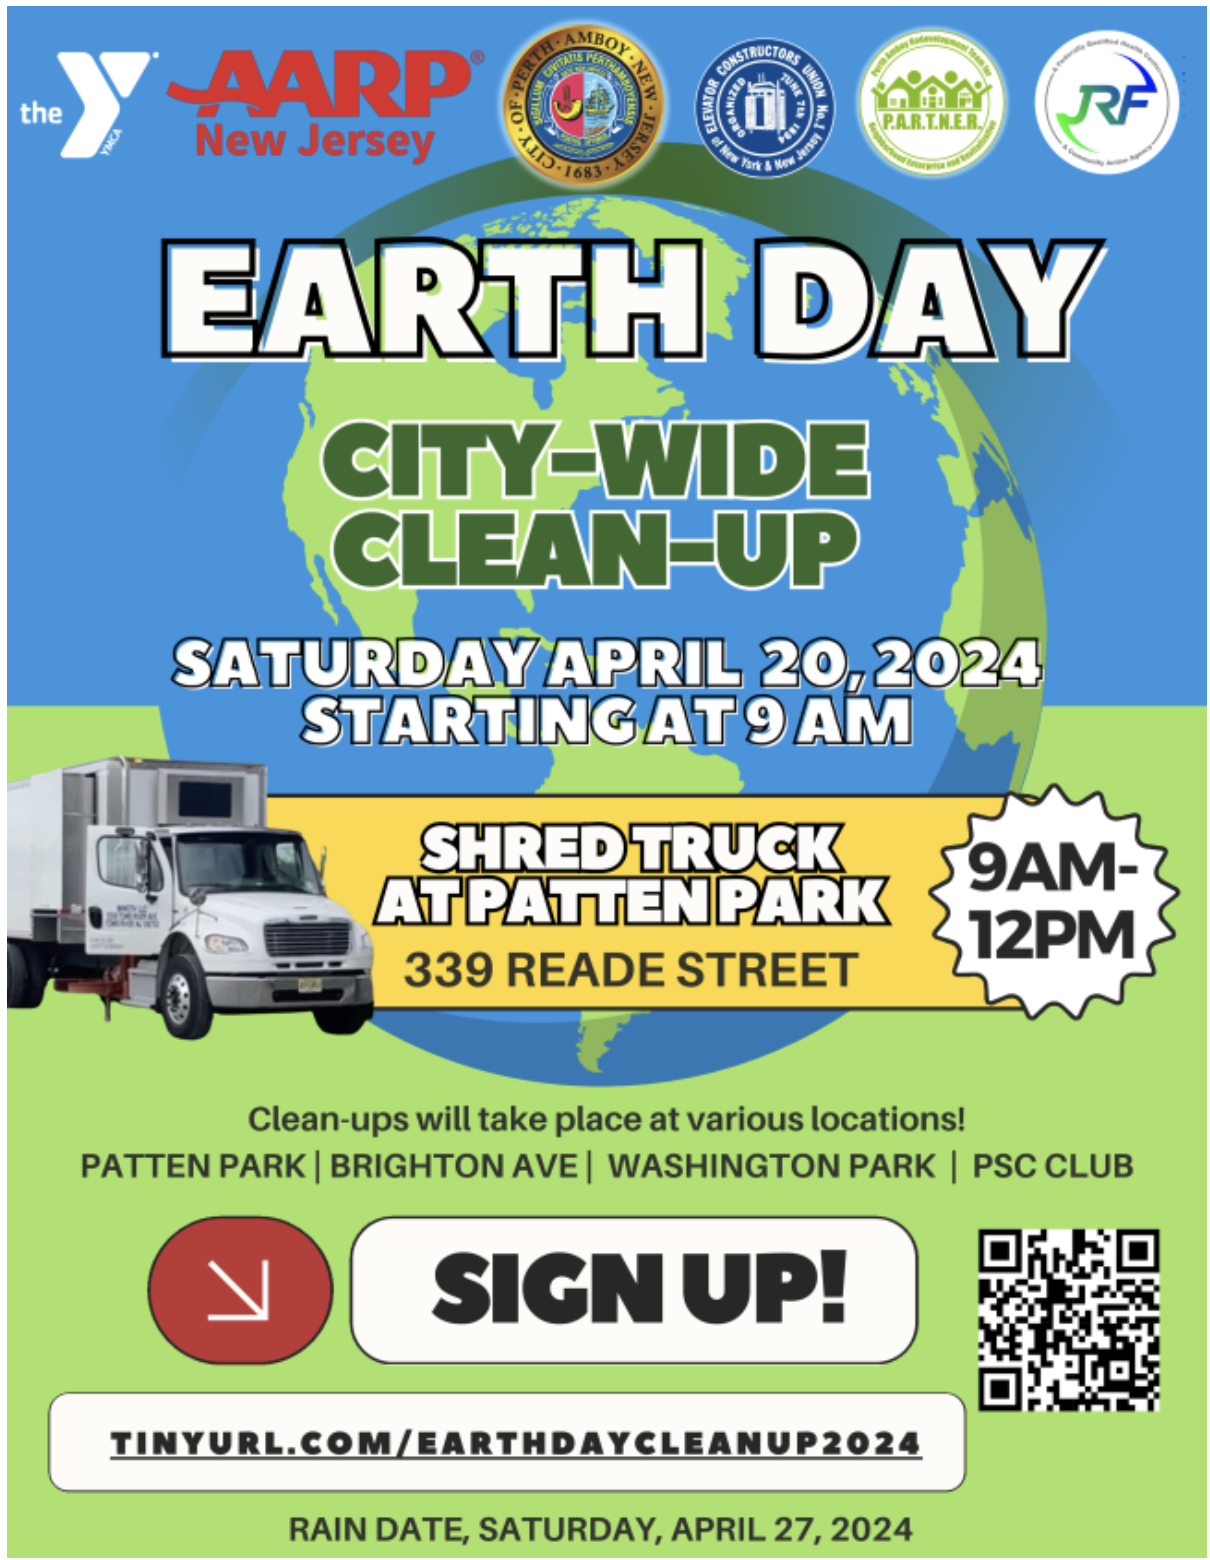 Earth Day Perth Amboy NJ